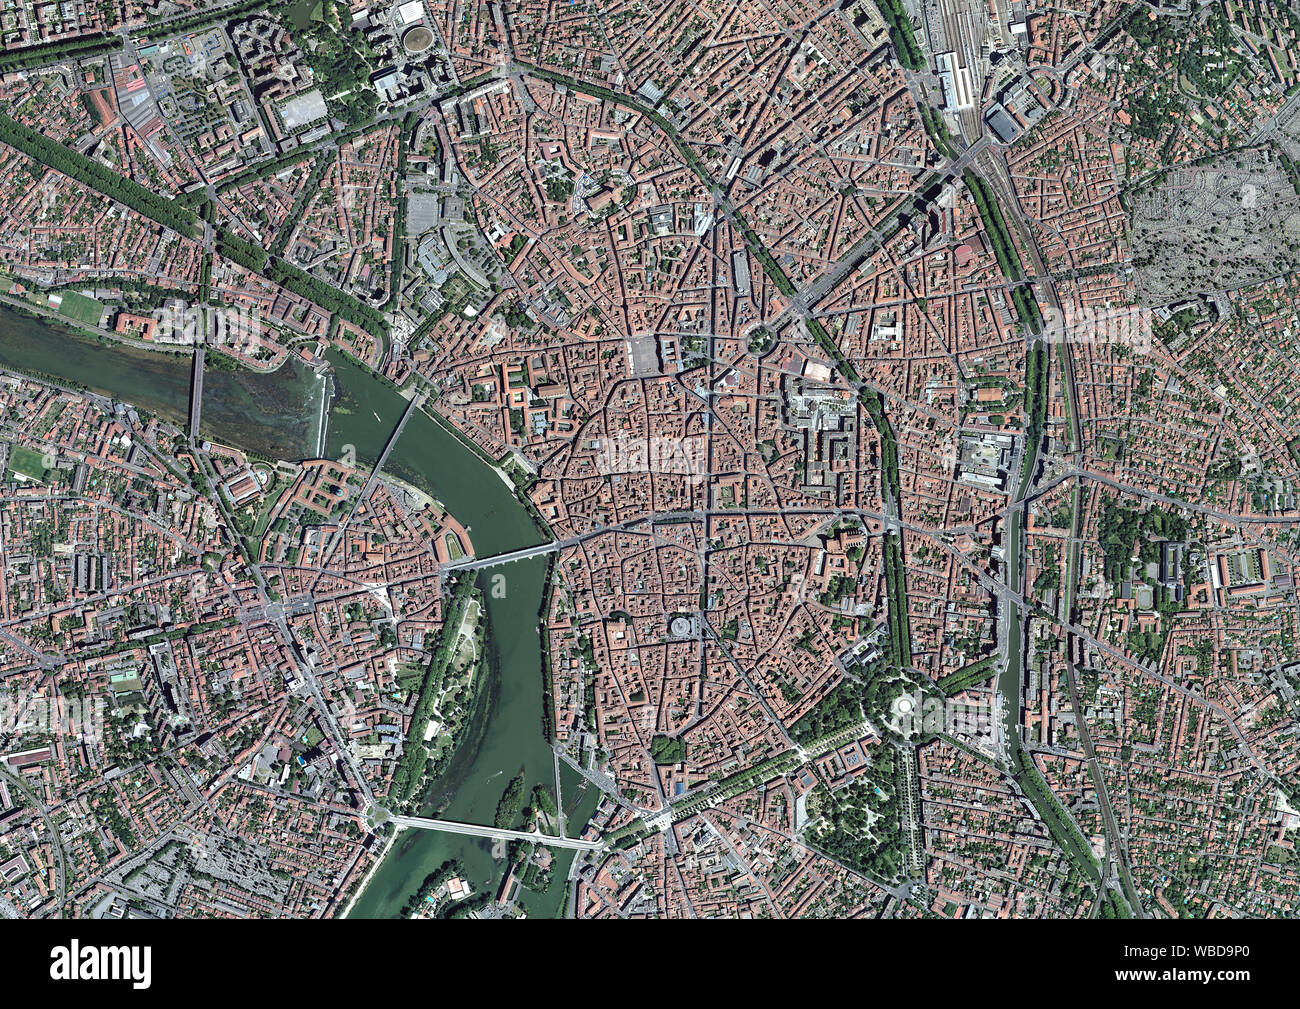 Fotografía aérea del centro histórico de Toulouse, la ciudad capital de Occitanie, Francia. Imagen tomada en 2016. Foto de stock